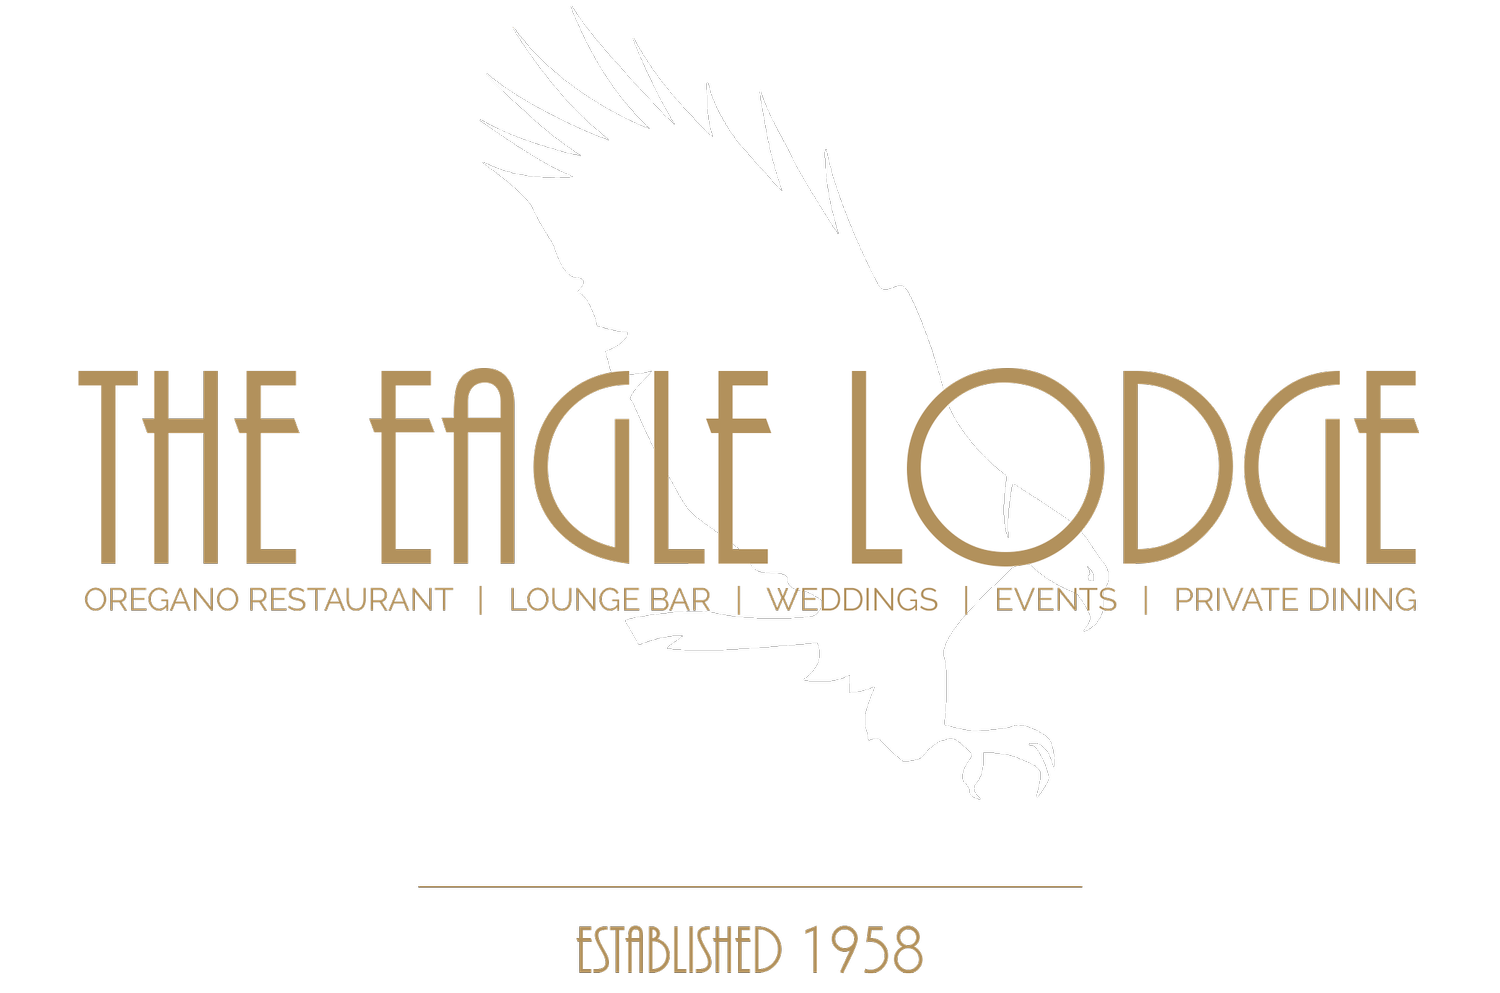 The Eagle Lodge